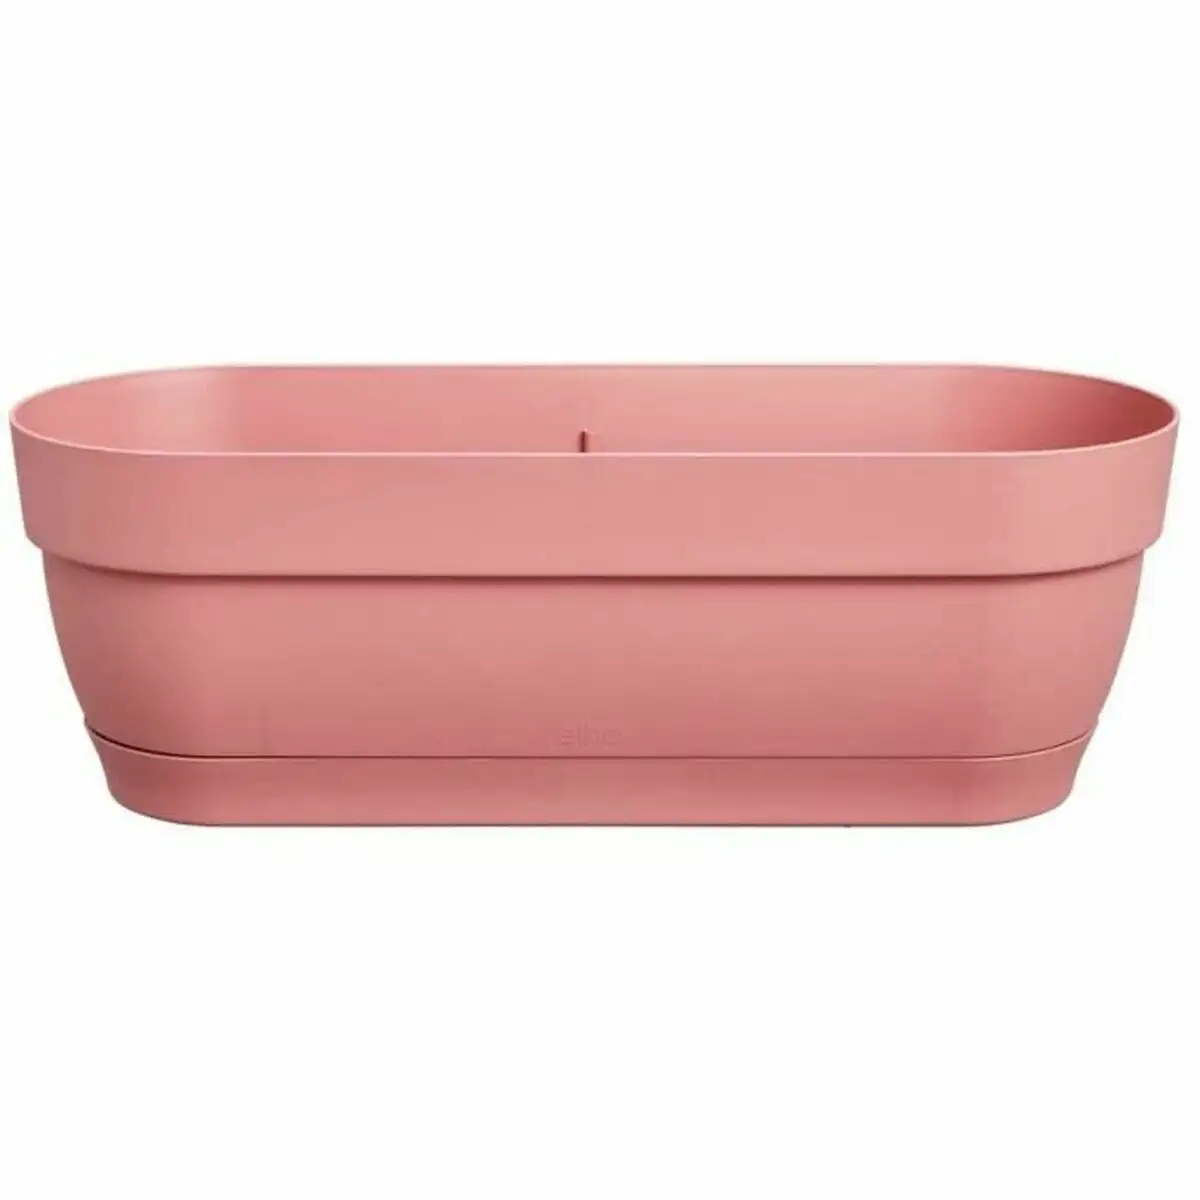 Jardiniere elho ronde rose plastique_5291. DIAYTAR SENEGAL - Là où Choisir est une Affirmation de Style. Naviguez à travers notre boutique en ligne et choisissez des produits qui vous distinguent et vous valorisent.